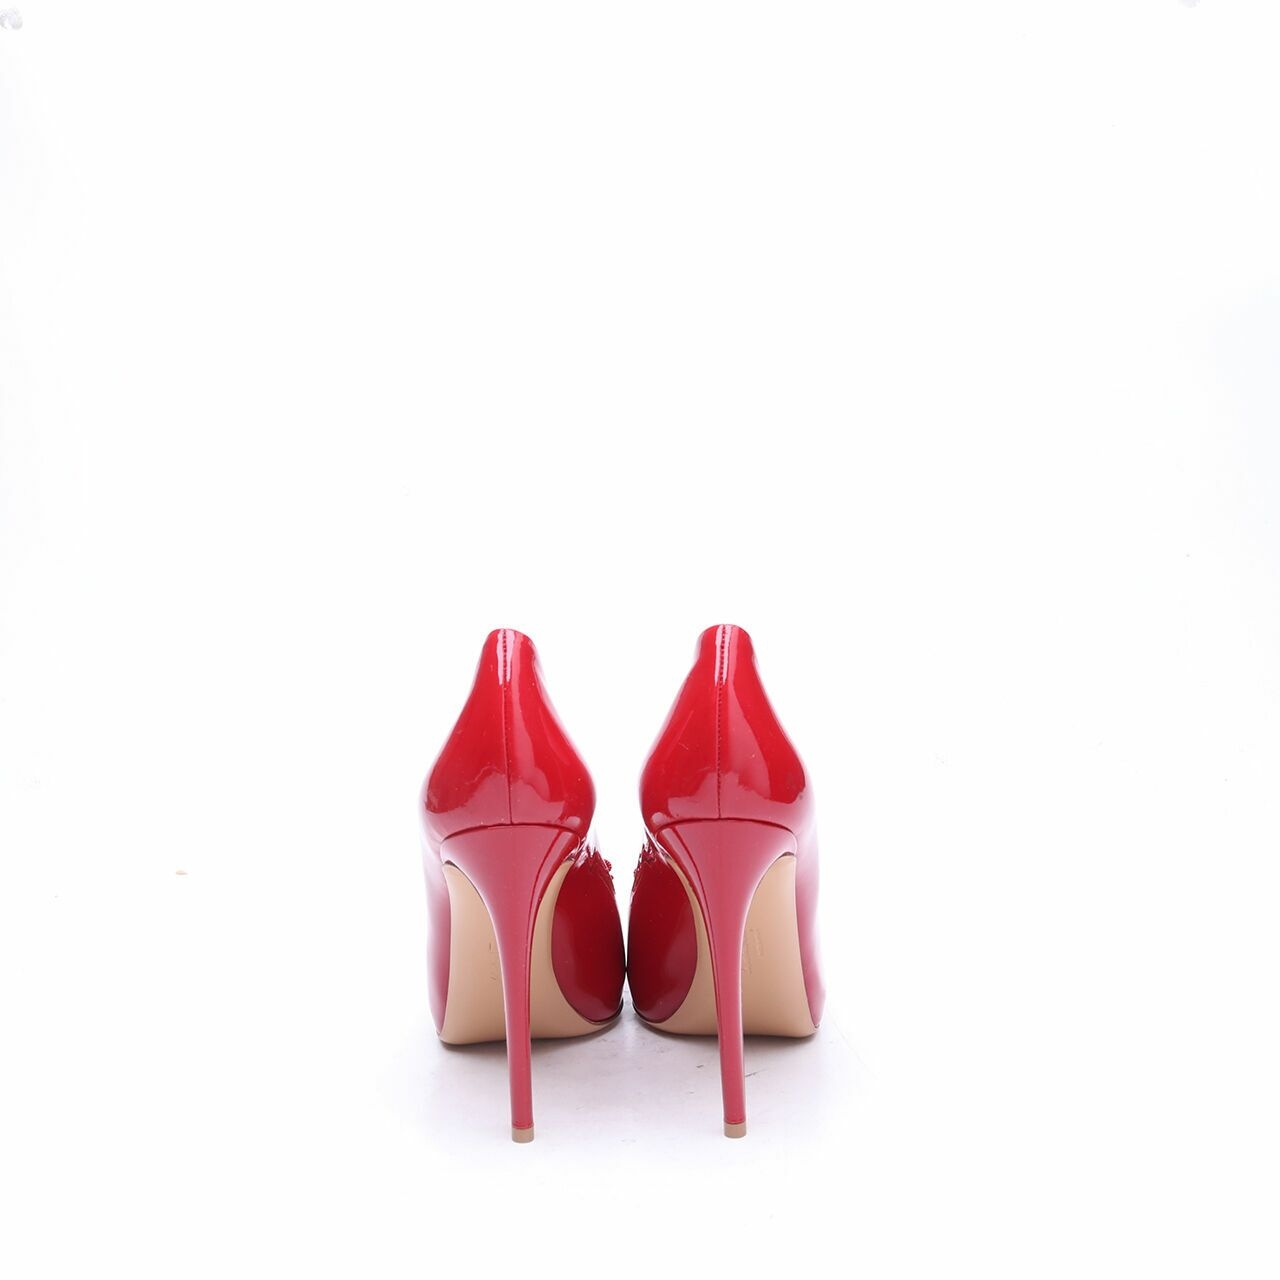 Salvatore Ferragamo Rilly Red Pumps Heels